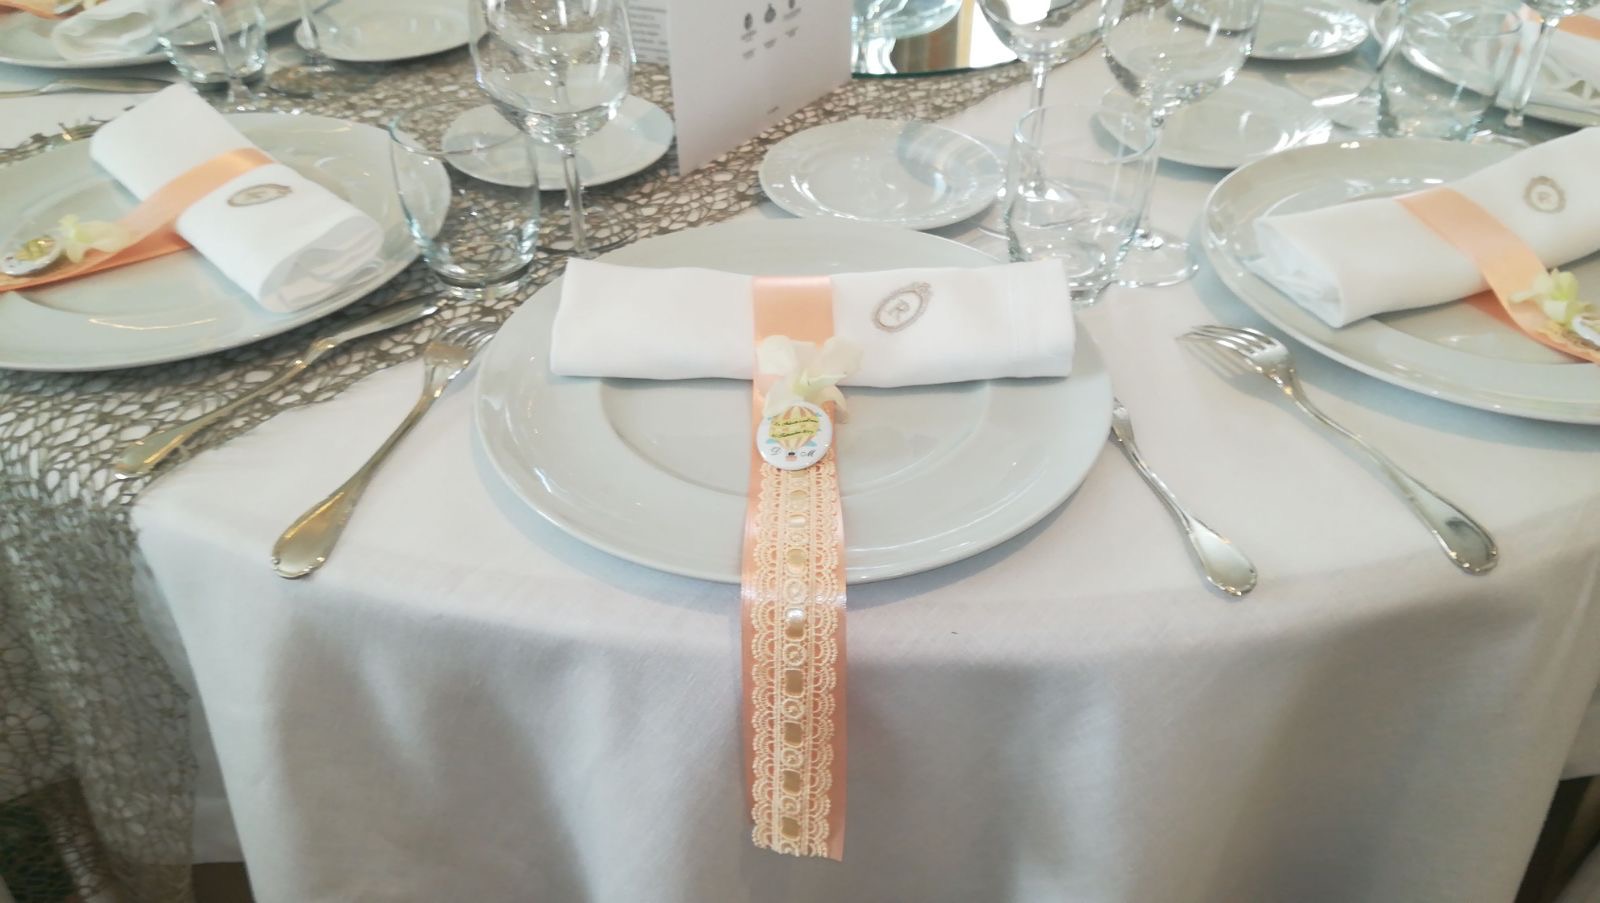 https://www.weddingamalfi.com/wp-content/uploads/Domenico-and-Maria-Wedding-Amalfi-table-decoration-placeholder.jpg